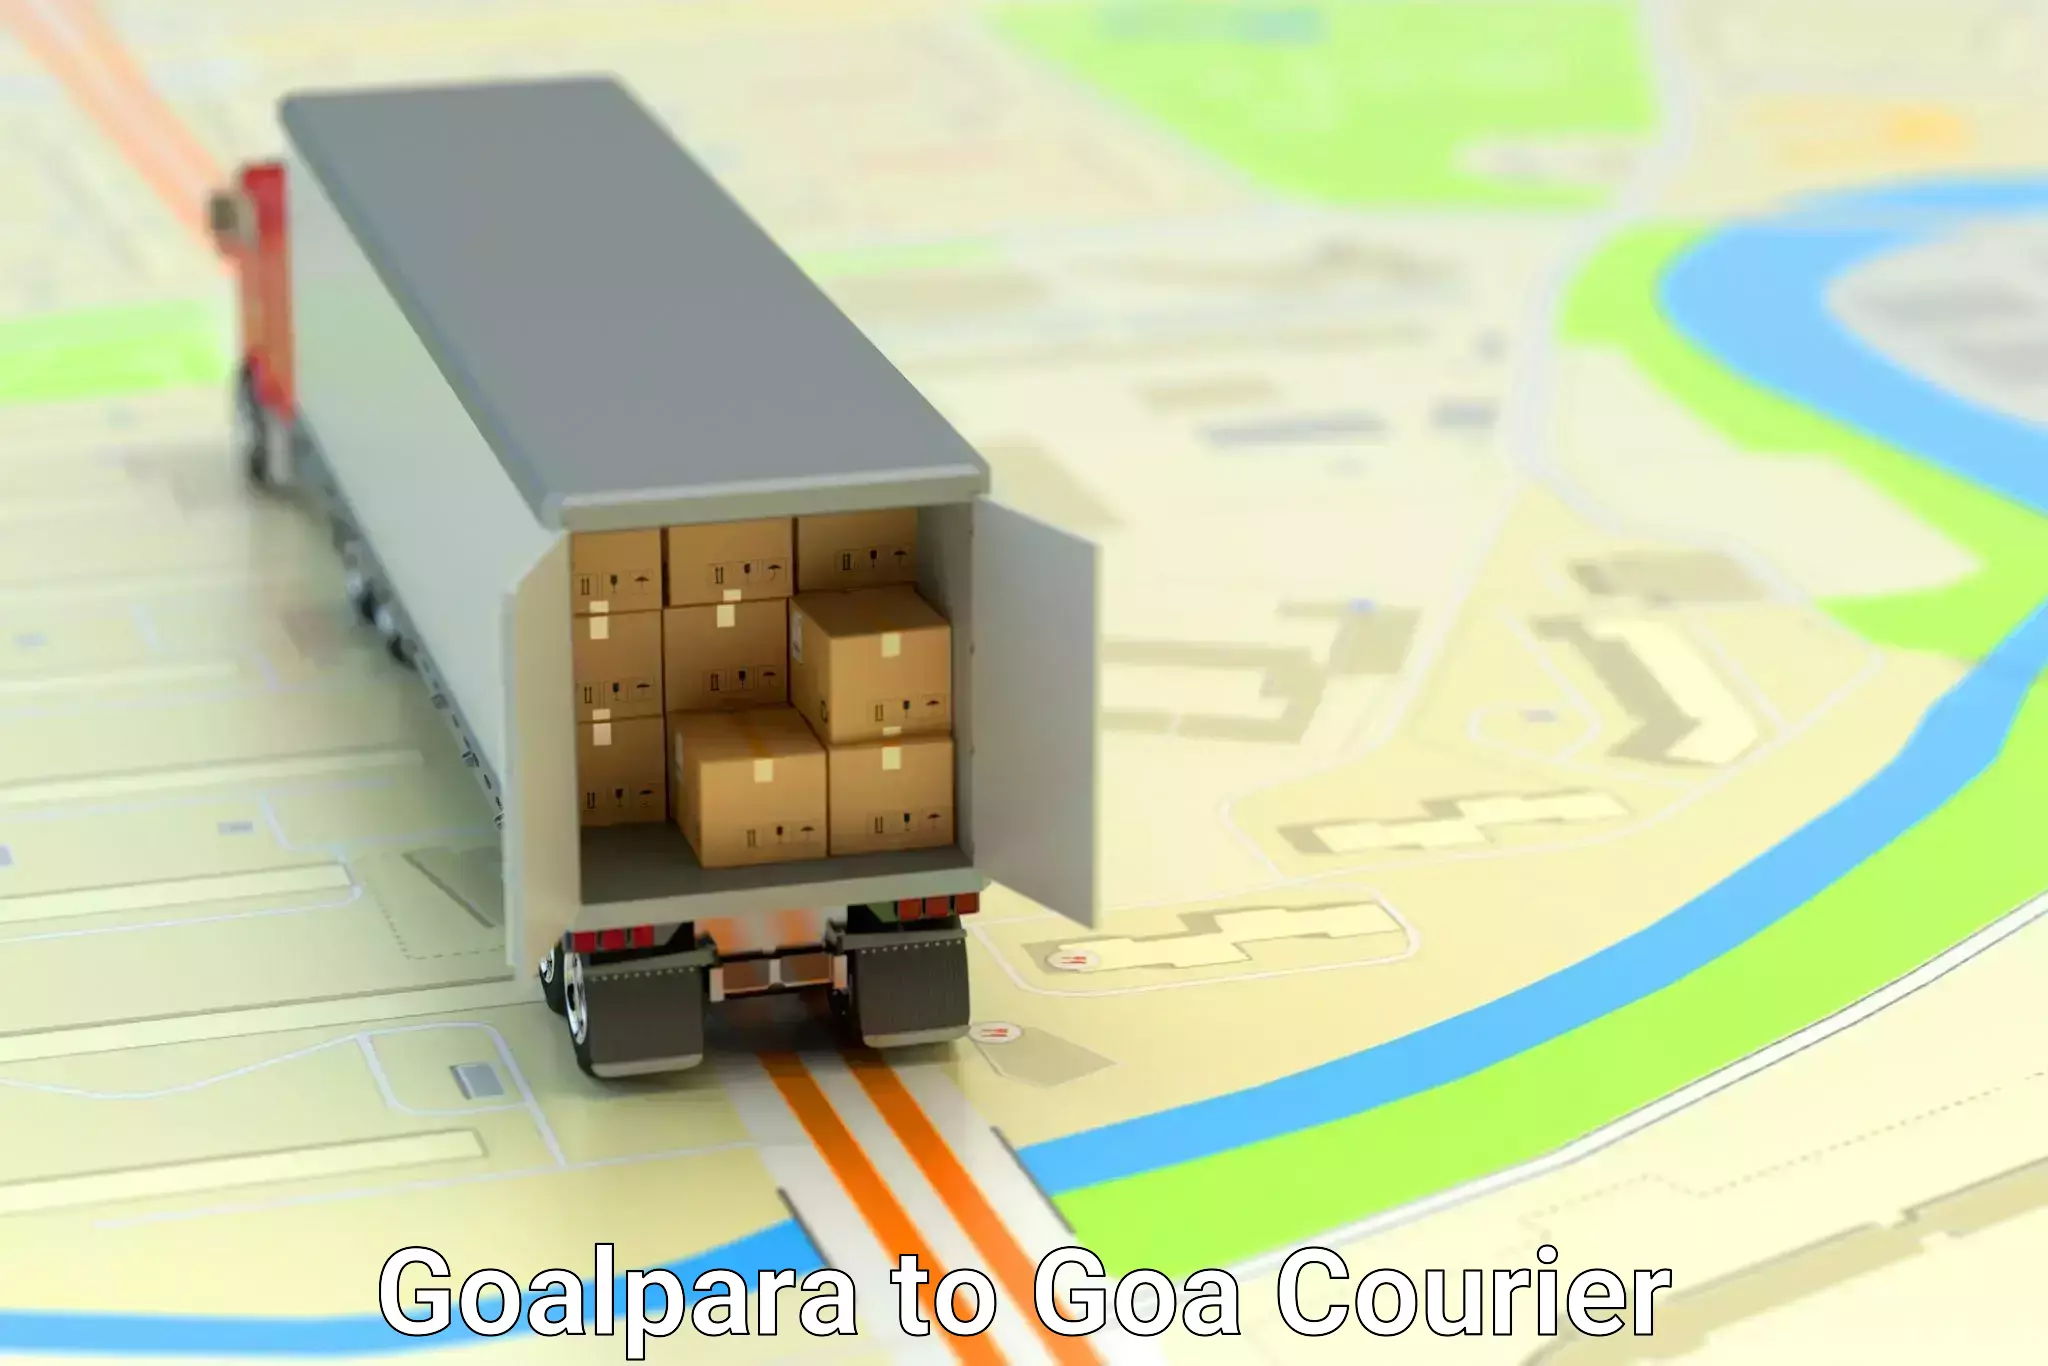 Personalized courier experiences Goalpara to Goa